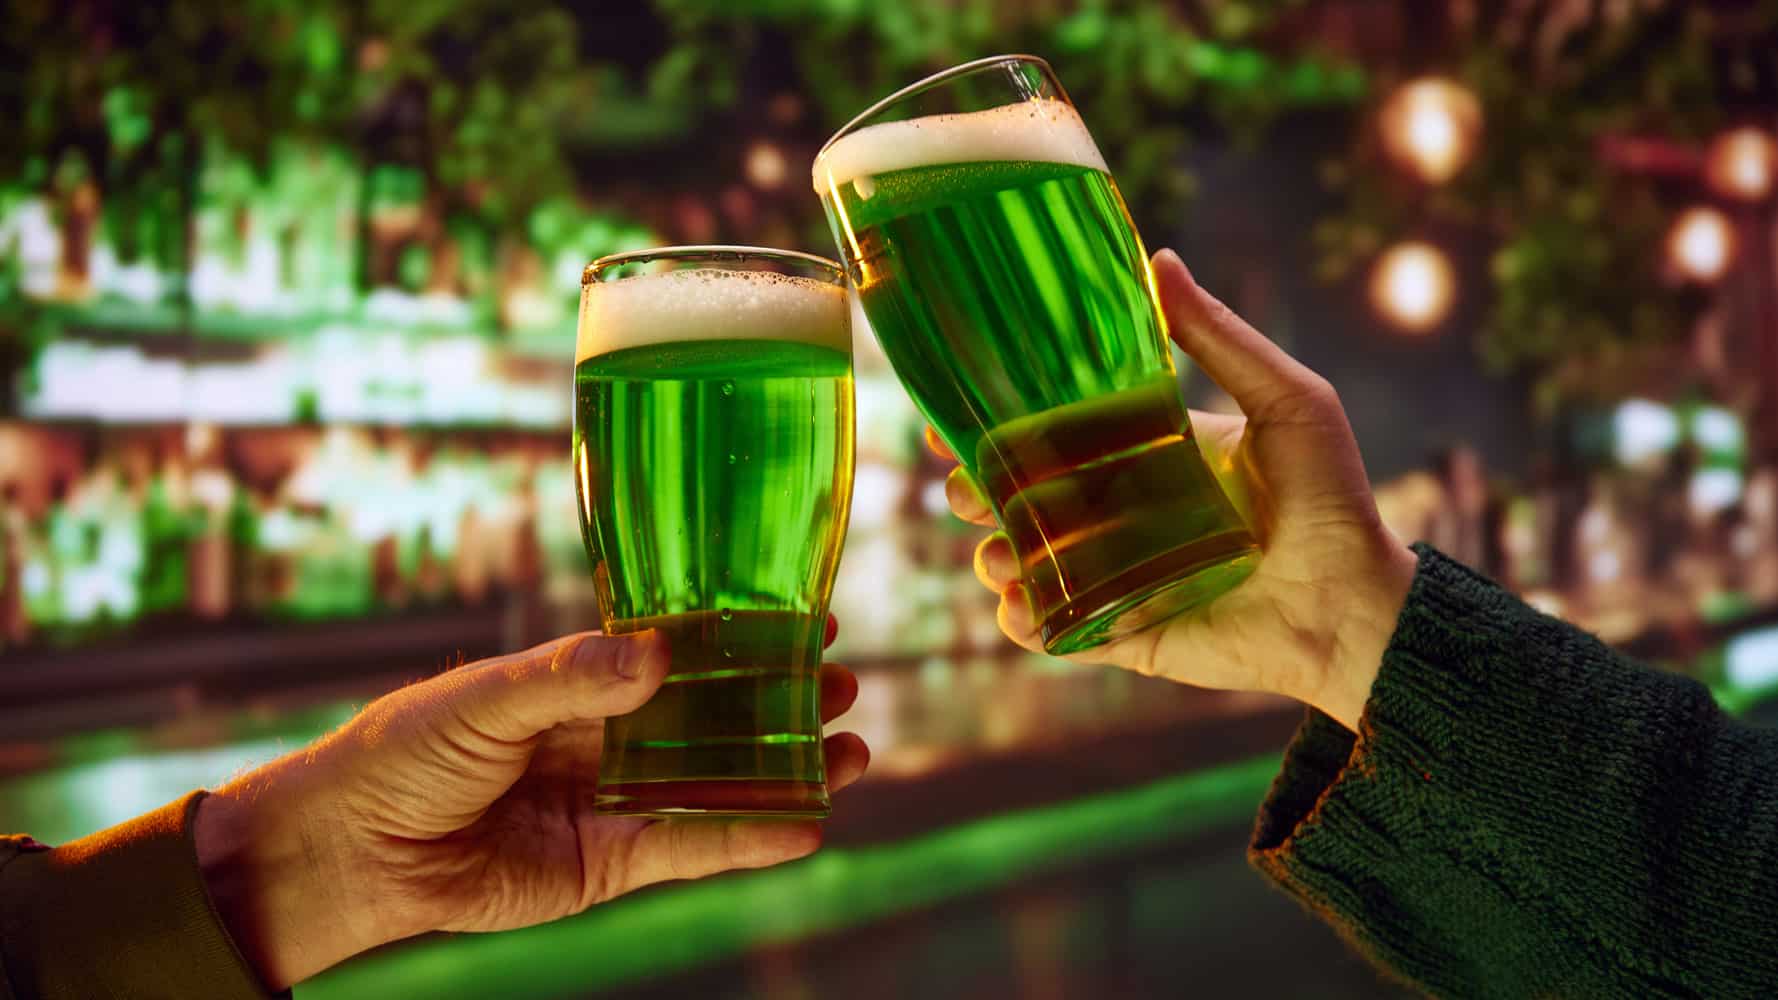 Senior Living, St Patricks Day Event Green Beer